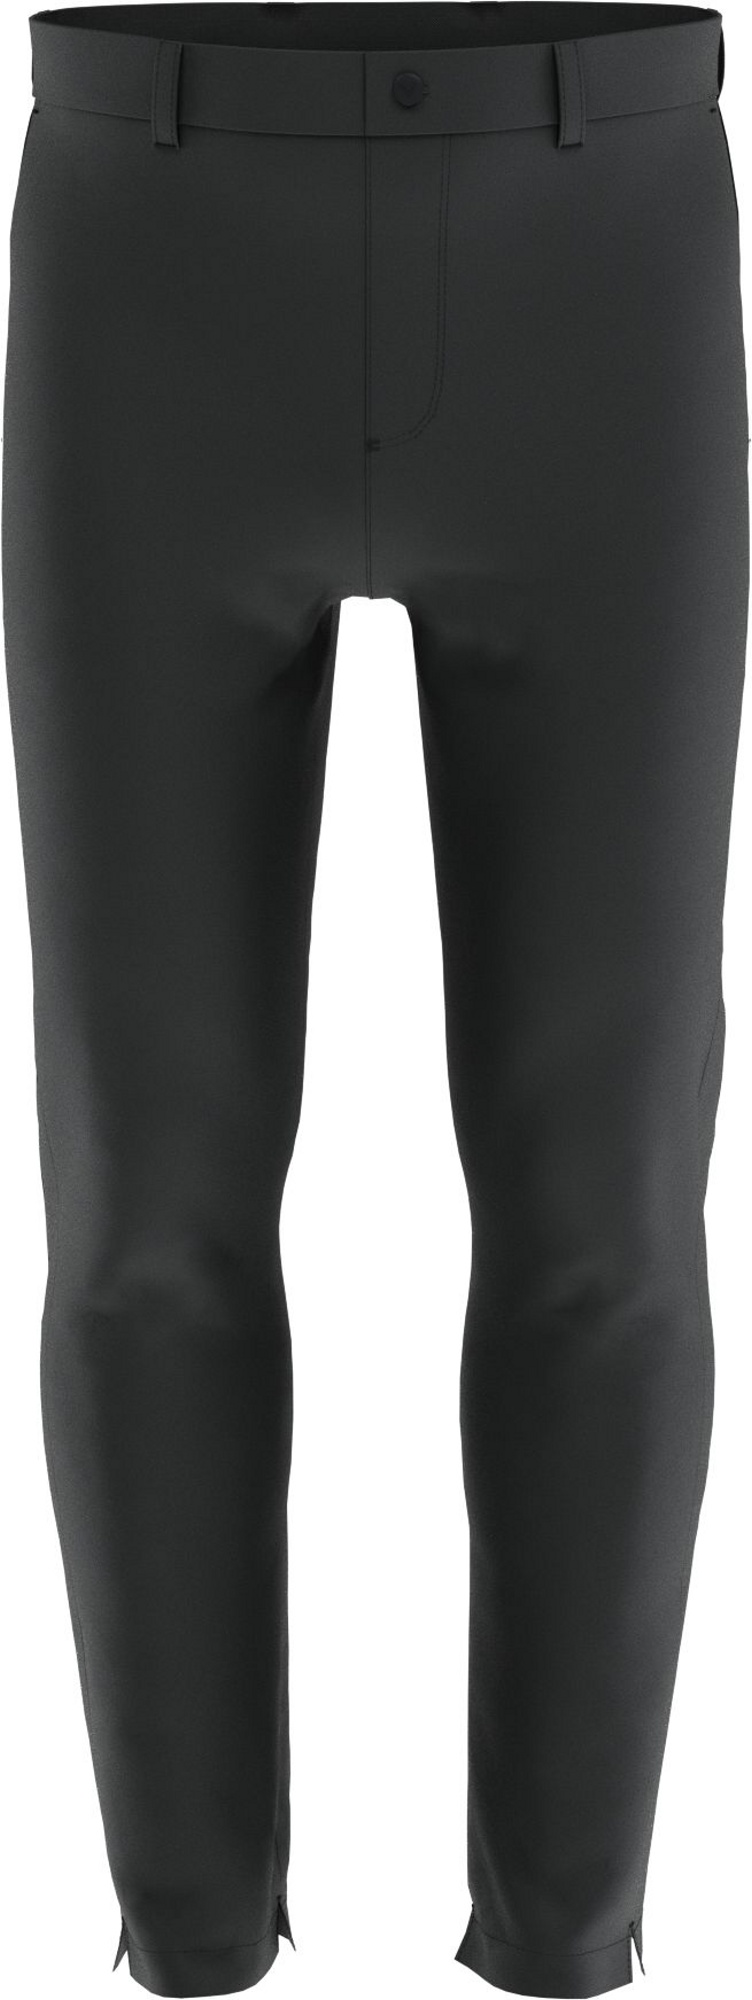 Callaway Water Resistant zateplené pánské golfové kalhoty, šedé, vel. 32/32